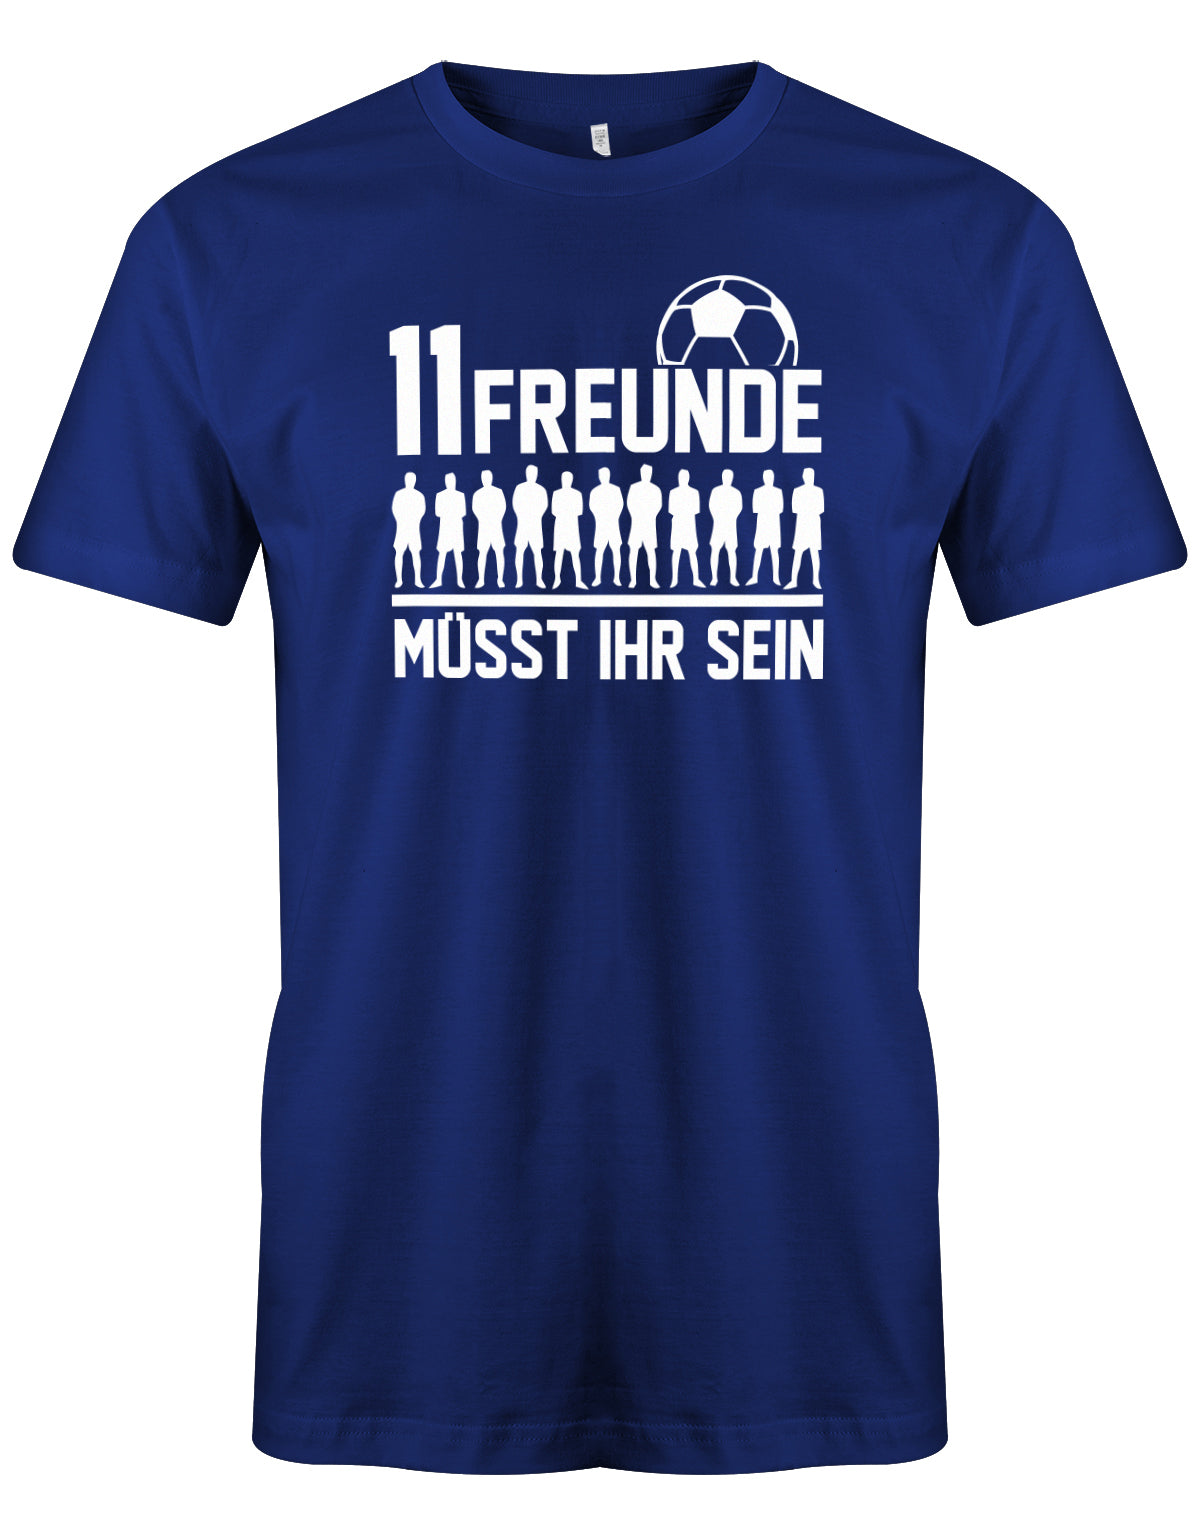 11 Freunde müsst ihr sein - Fußball - Herren T-Shirt Royalblau